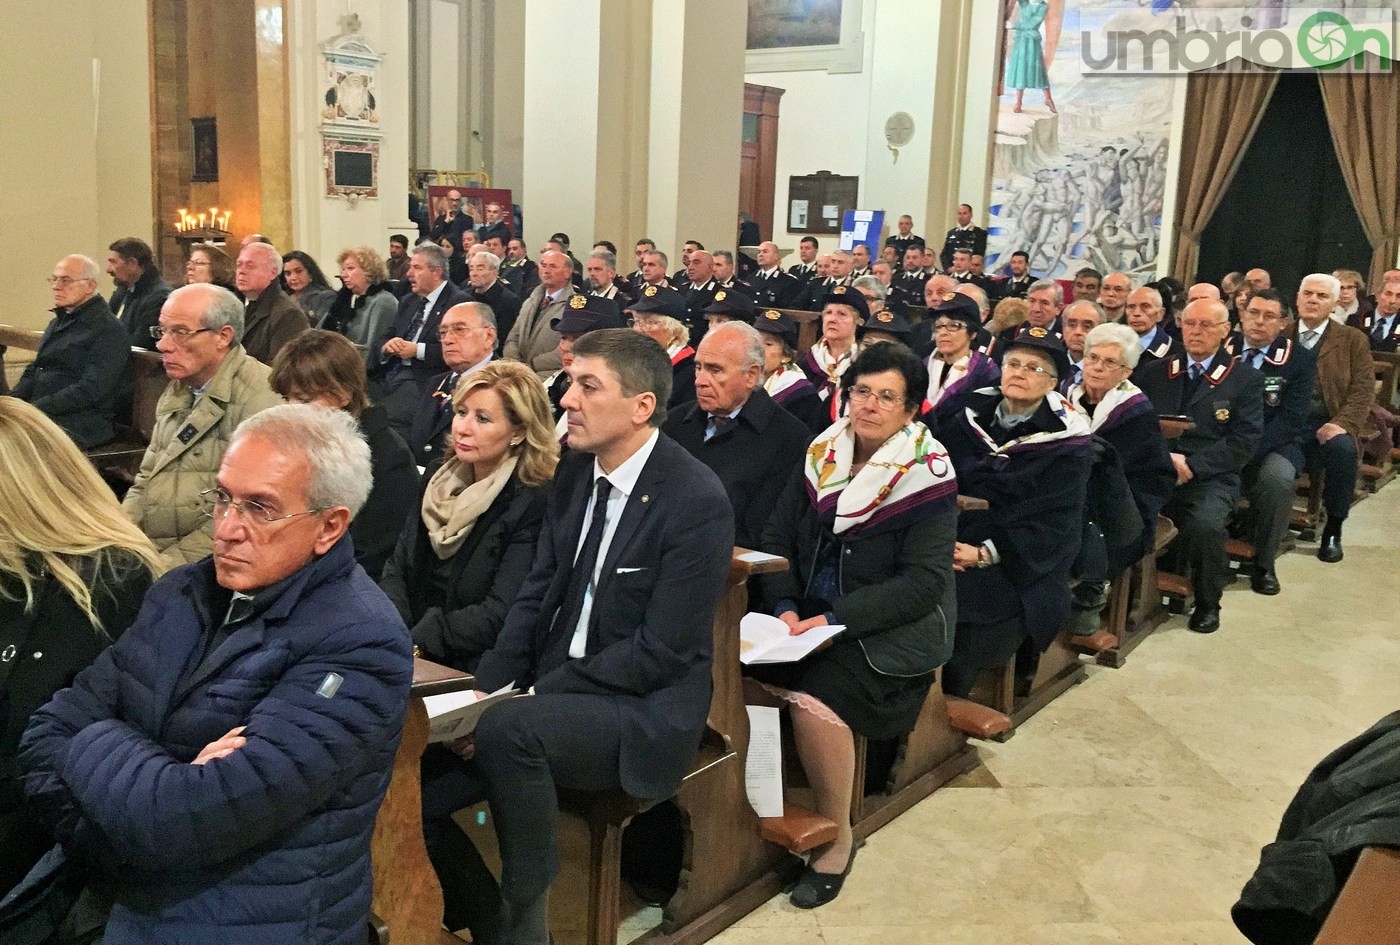 Virgo-Fidelis-carabinieri-Terni-in-cattedrale-21-novembre-2016-12